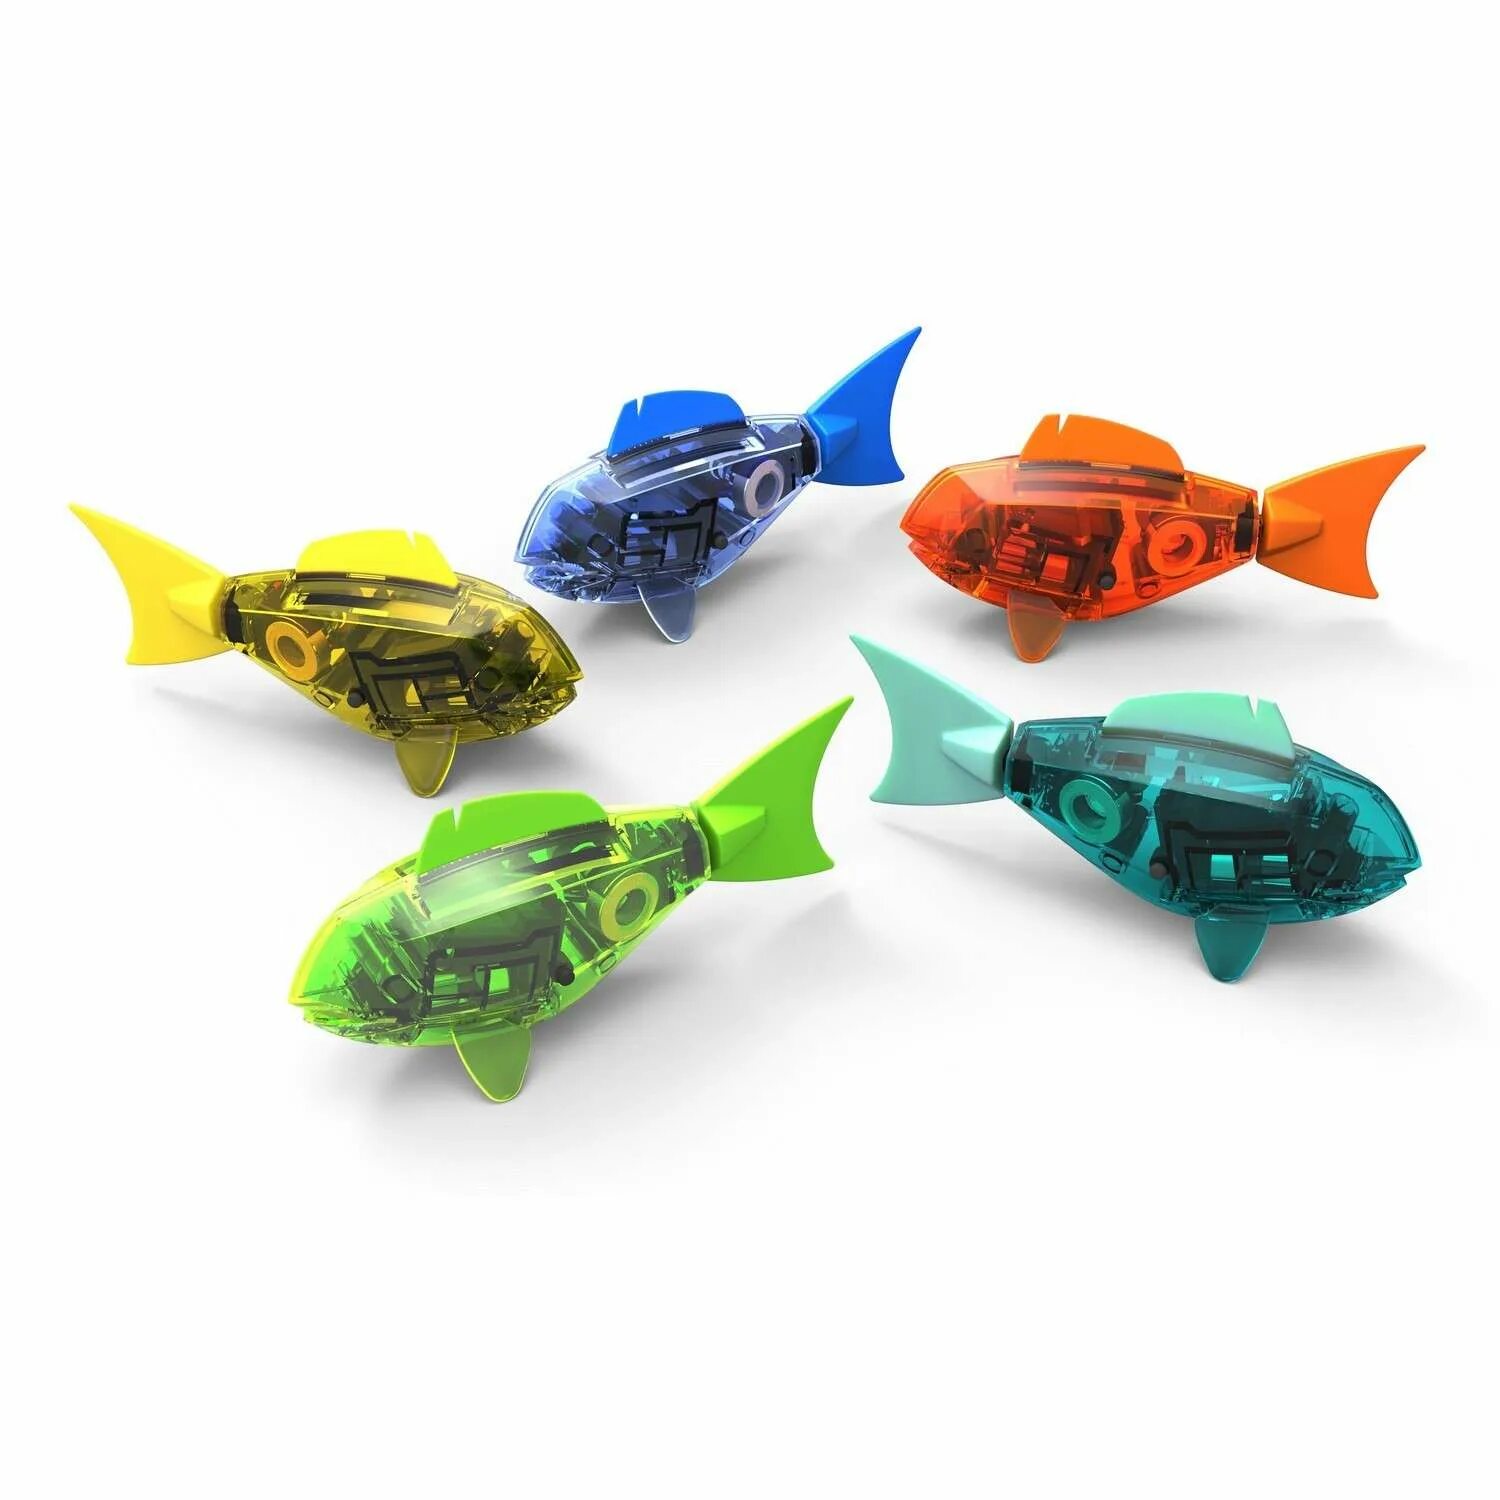 Микро продукты. Рыбка робот. Aquaai микророботы. Модели возможных рыбок роботов. Рыба ты в роботы игрушки.